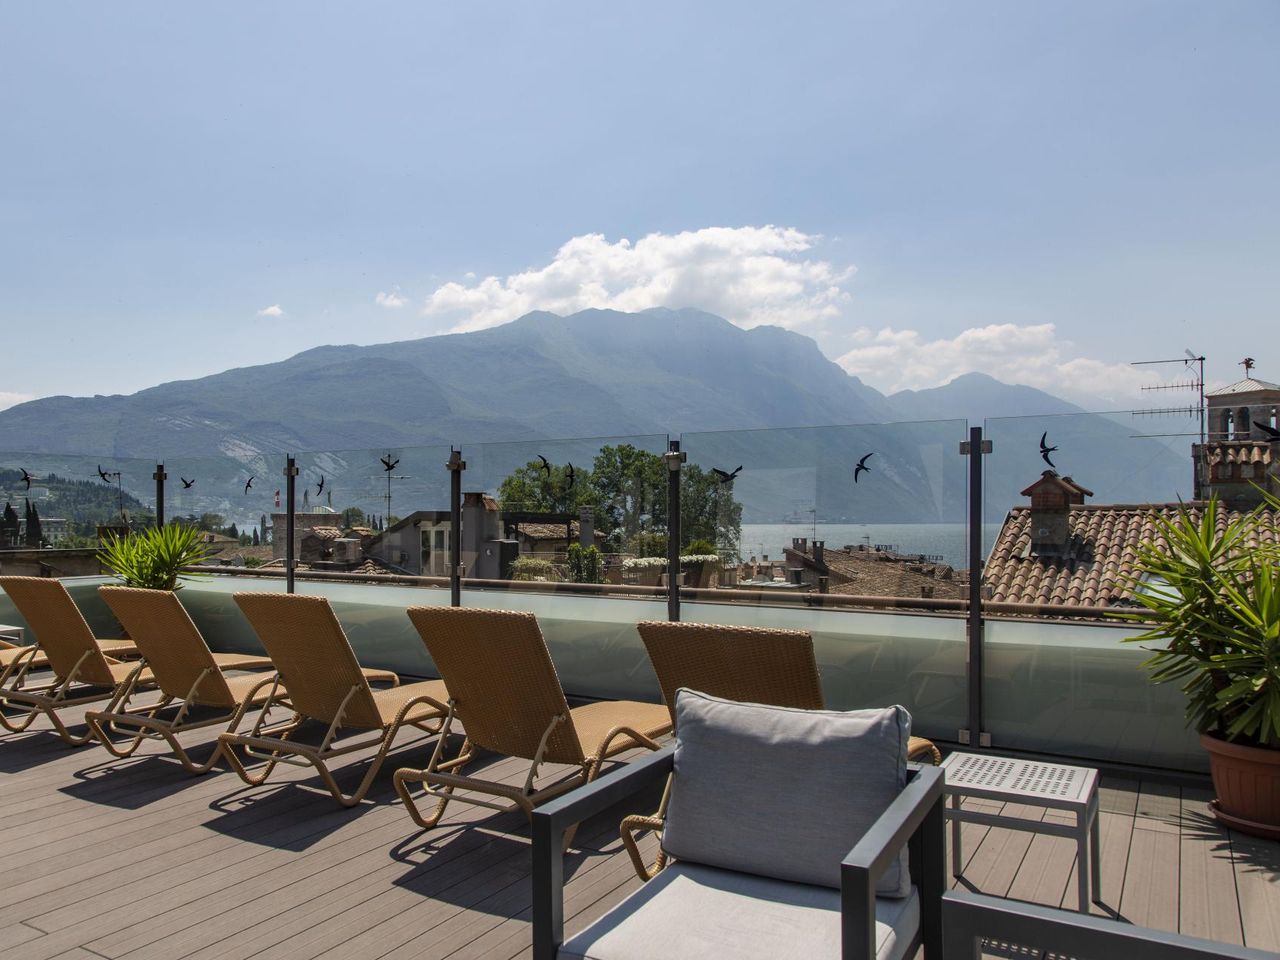 Auszeit am See - 8 Tage in Riva del Garda